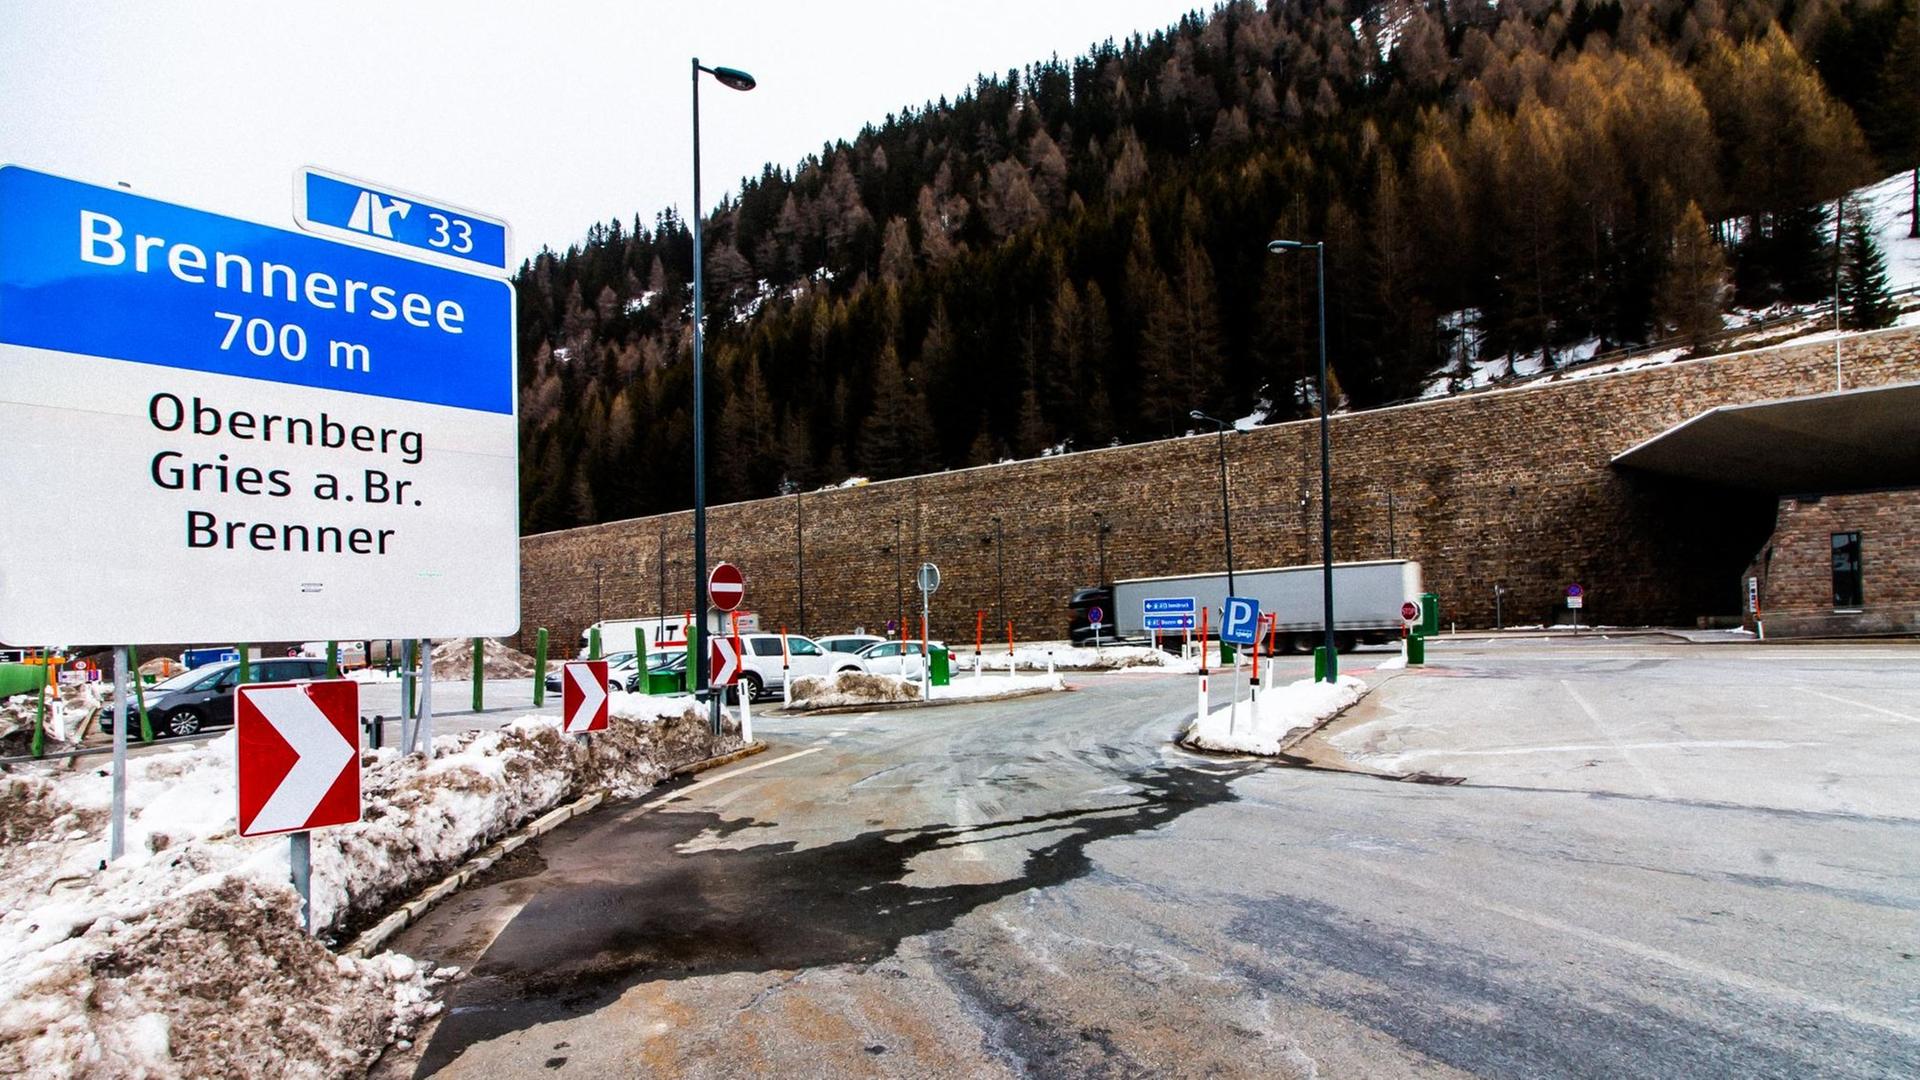 Grenzzaun am Brenner - Das Ideal der politischen Einheit Europas